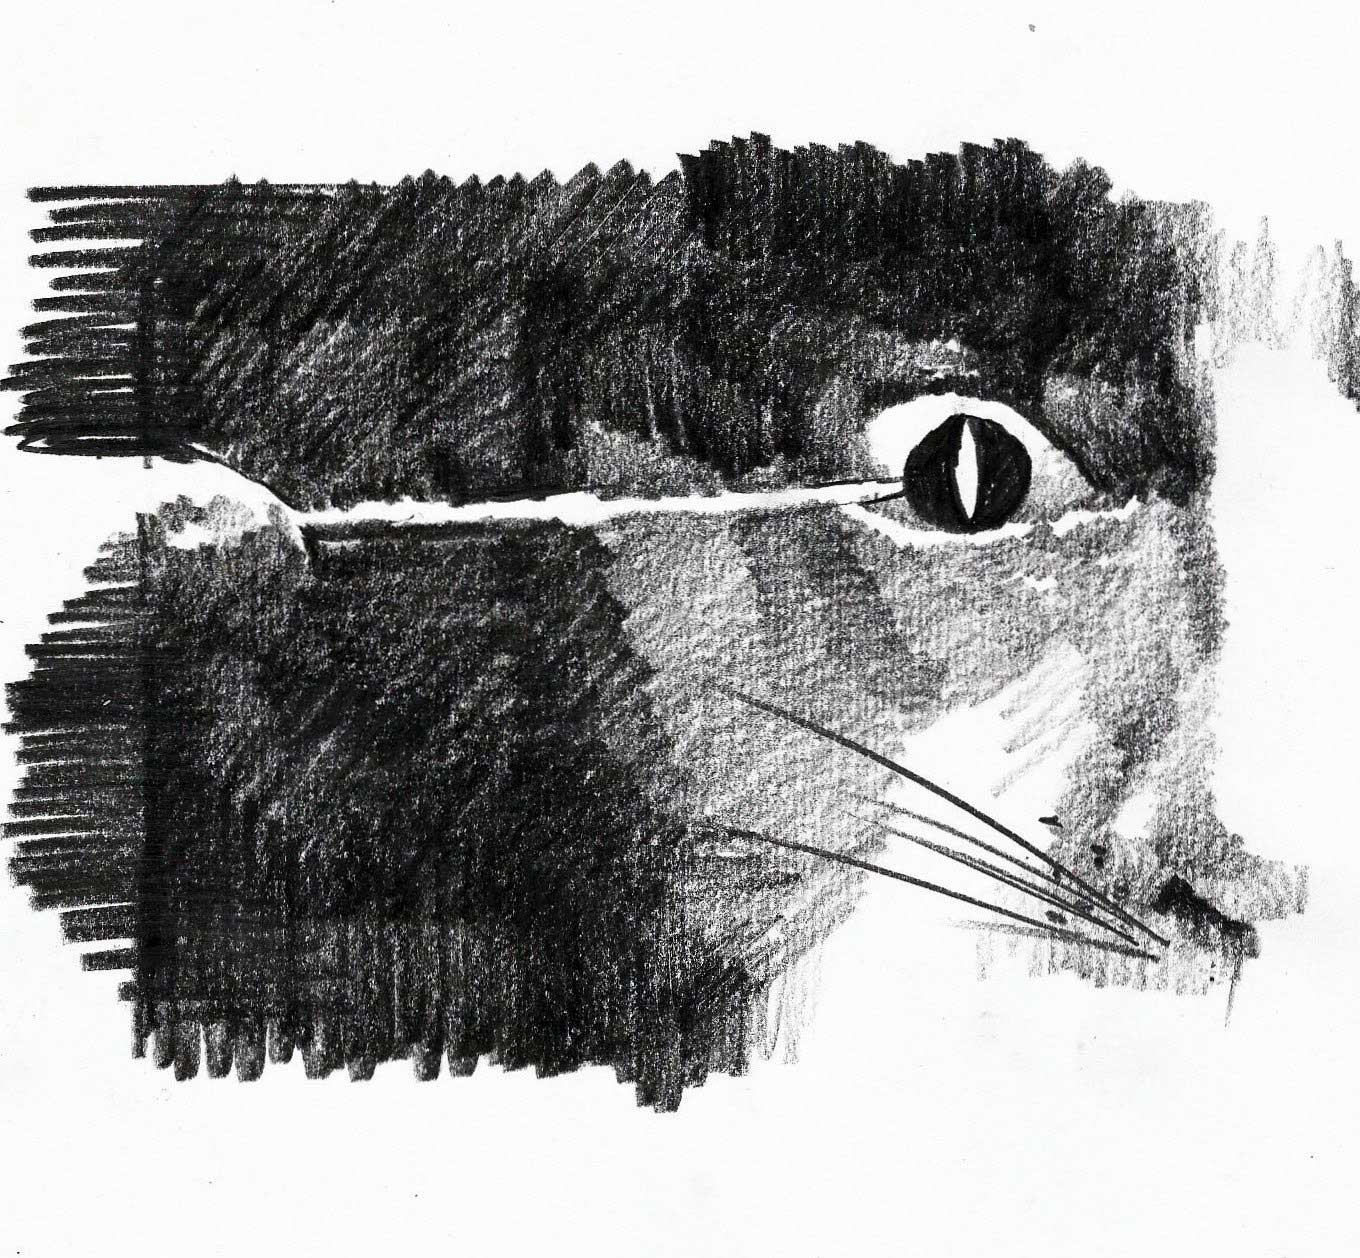 Tontheridas: "Un gato andaluz"